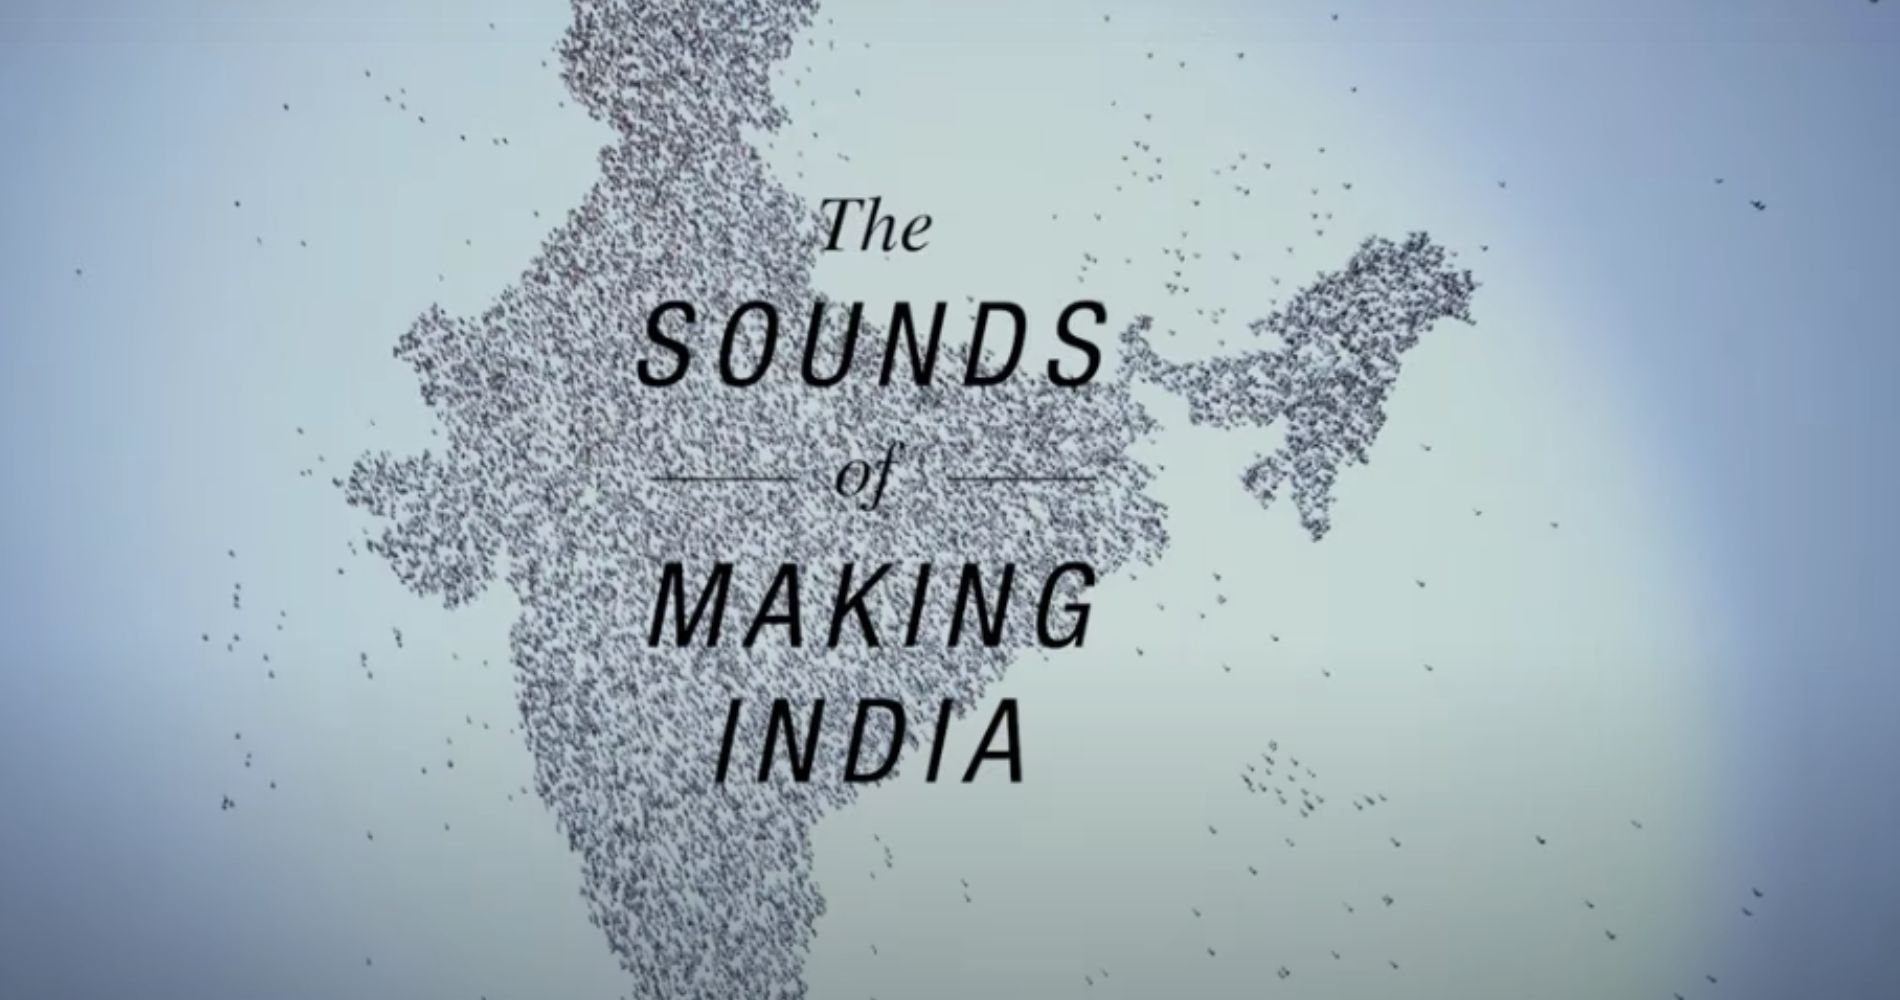 Godrej celebrating 75 years of India’s Independence with #SoundsOfMakingIndia